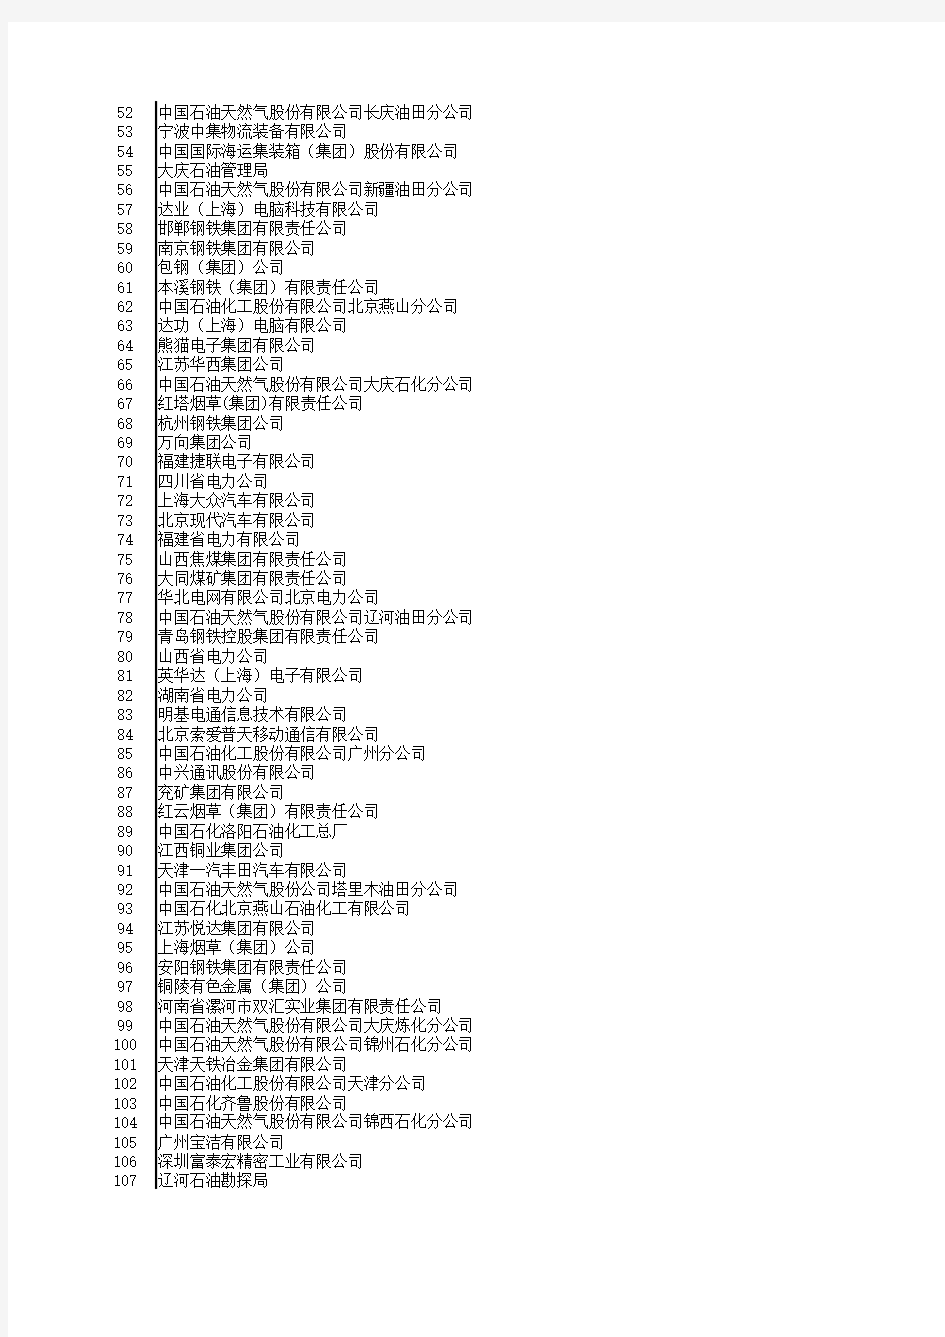 中国大型工业企业名单